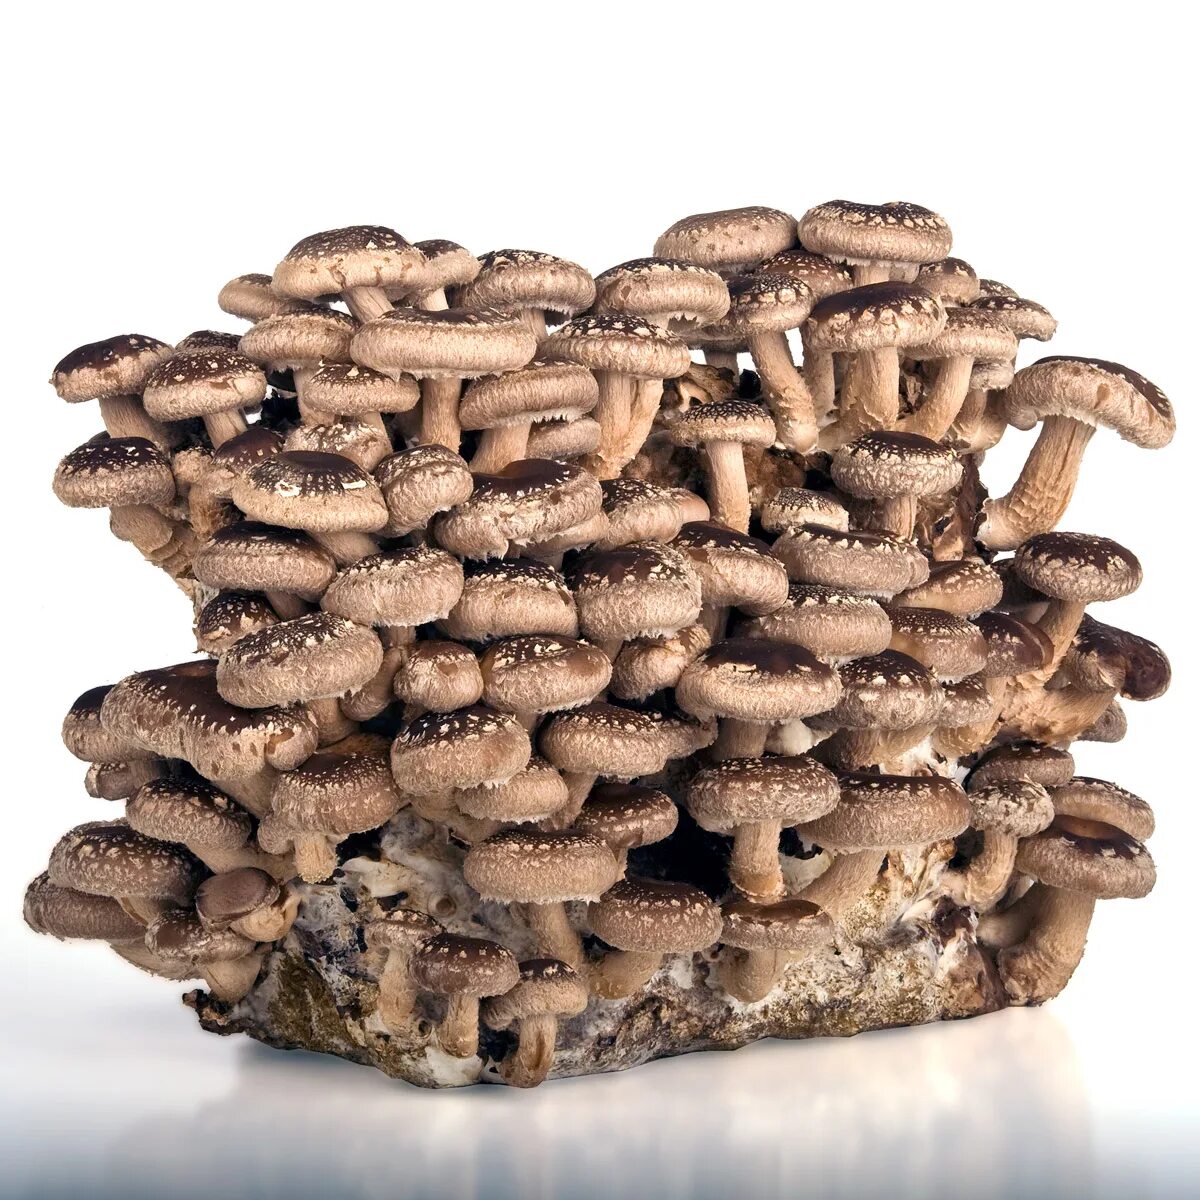 Шиитаке свежие. Японские грибы шиитаке. Шиитаке Lentinus edodes. Сиитаке (шиитаке. Китайские грибы шитаки.